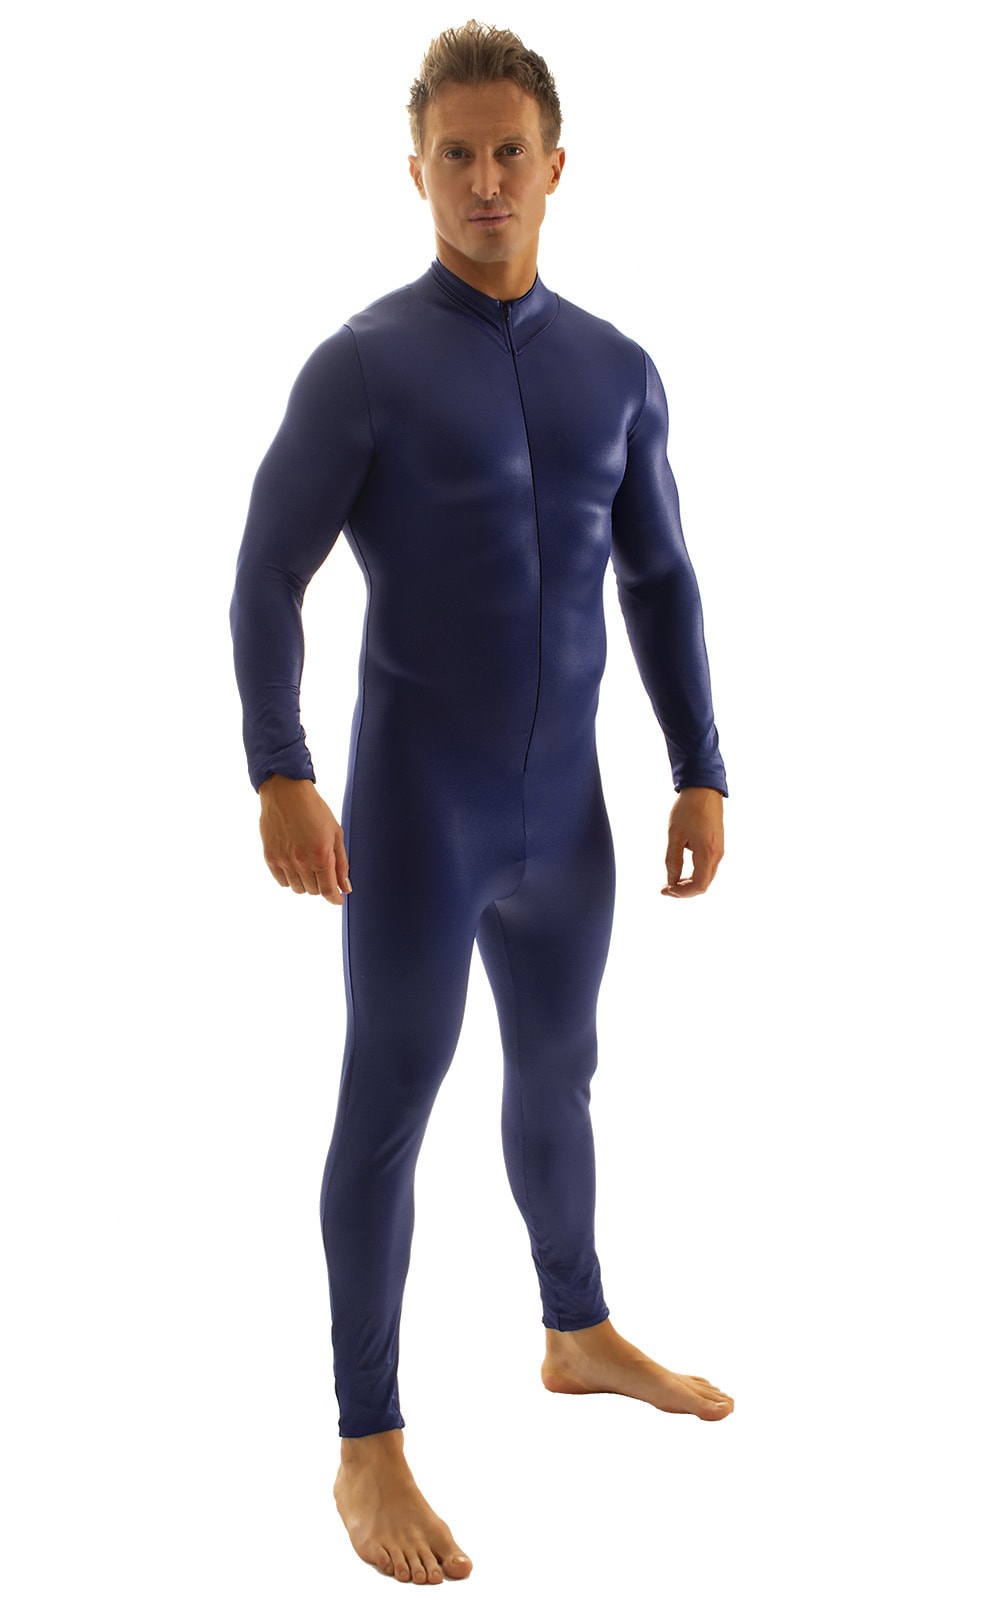 Full Bodysuit Zentai Lycra Spandex Suit for men in Wet Look Navy Blue, Front View